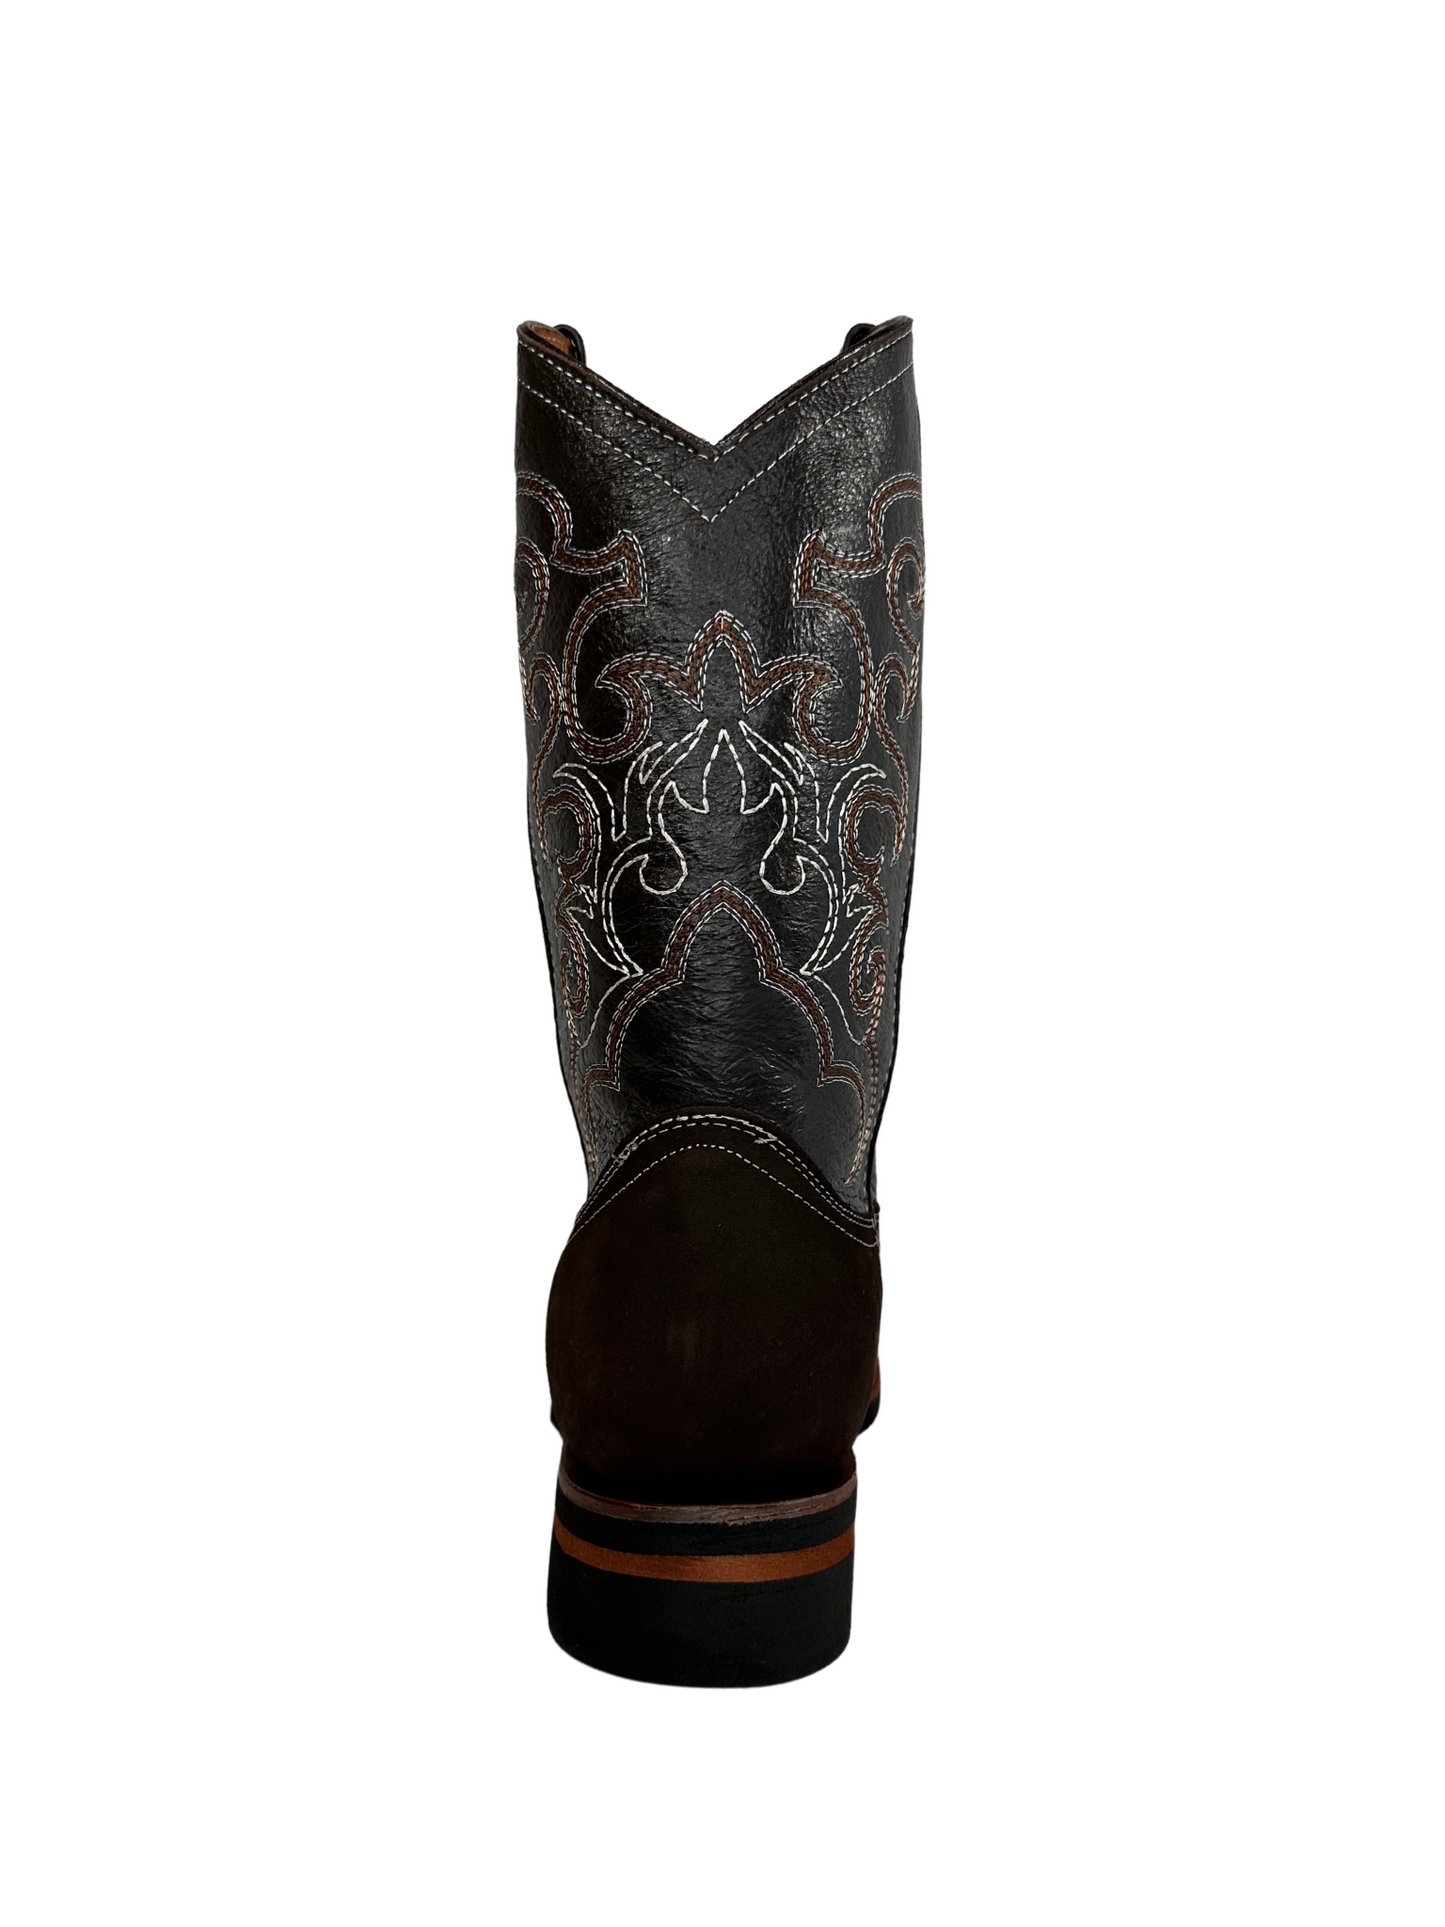 La Sierra Men's Brown Nobuck Rodeo Toe Boot